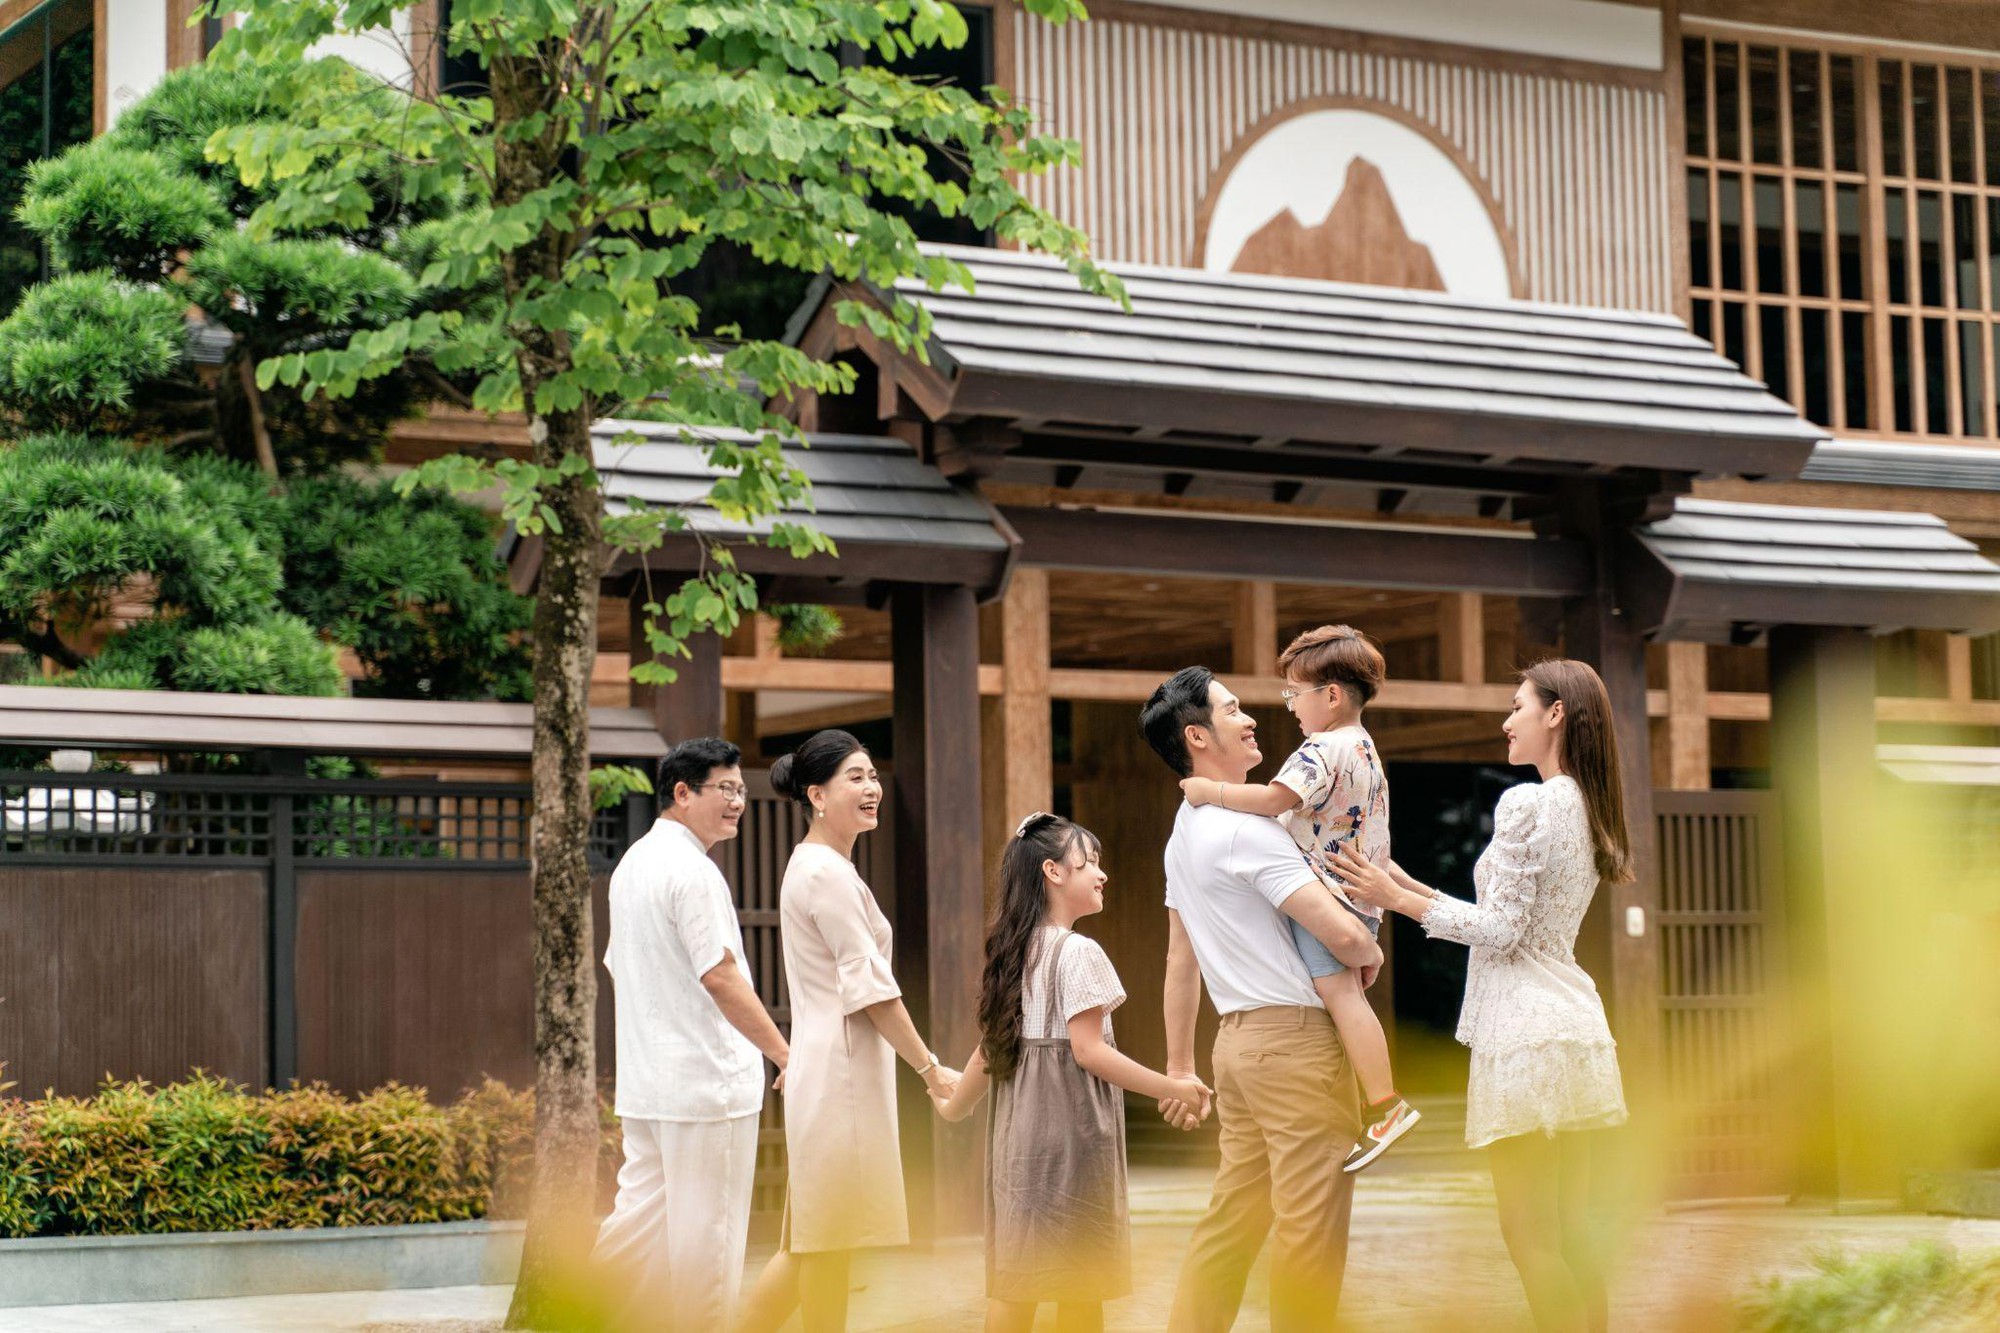 Du lịch nghỉ dưỡng tắm khoáng nóng onsen- bắt trọn xu thế thời thượng - Ảnh 5.